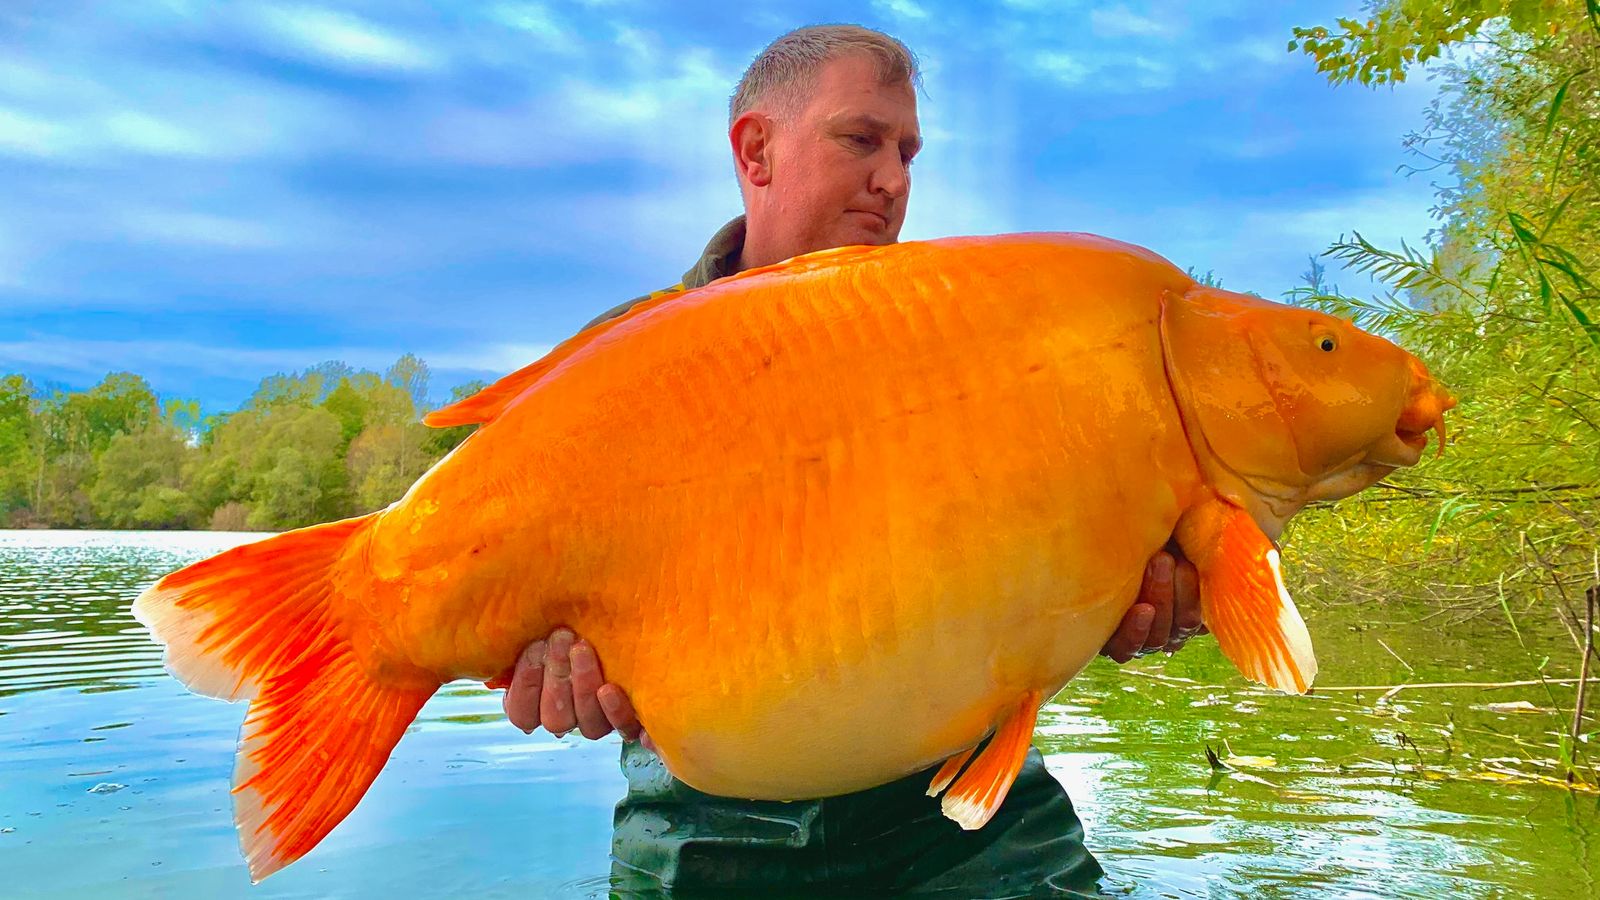 https://e3.365dm.com/22/11/1600x900/skynews-giant-goldfish-carp_5974274.jpg?20221122082215